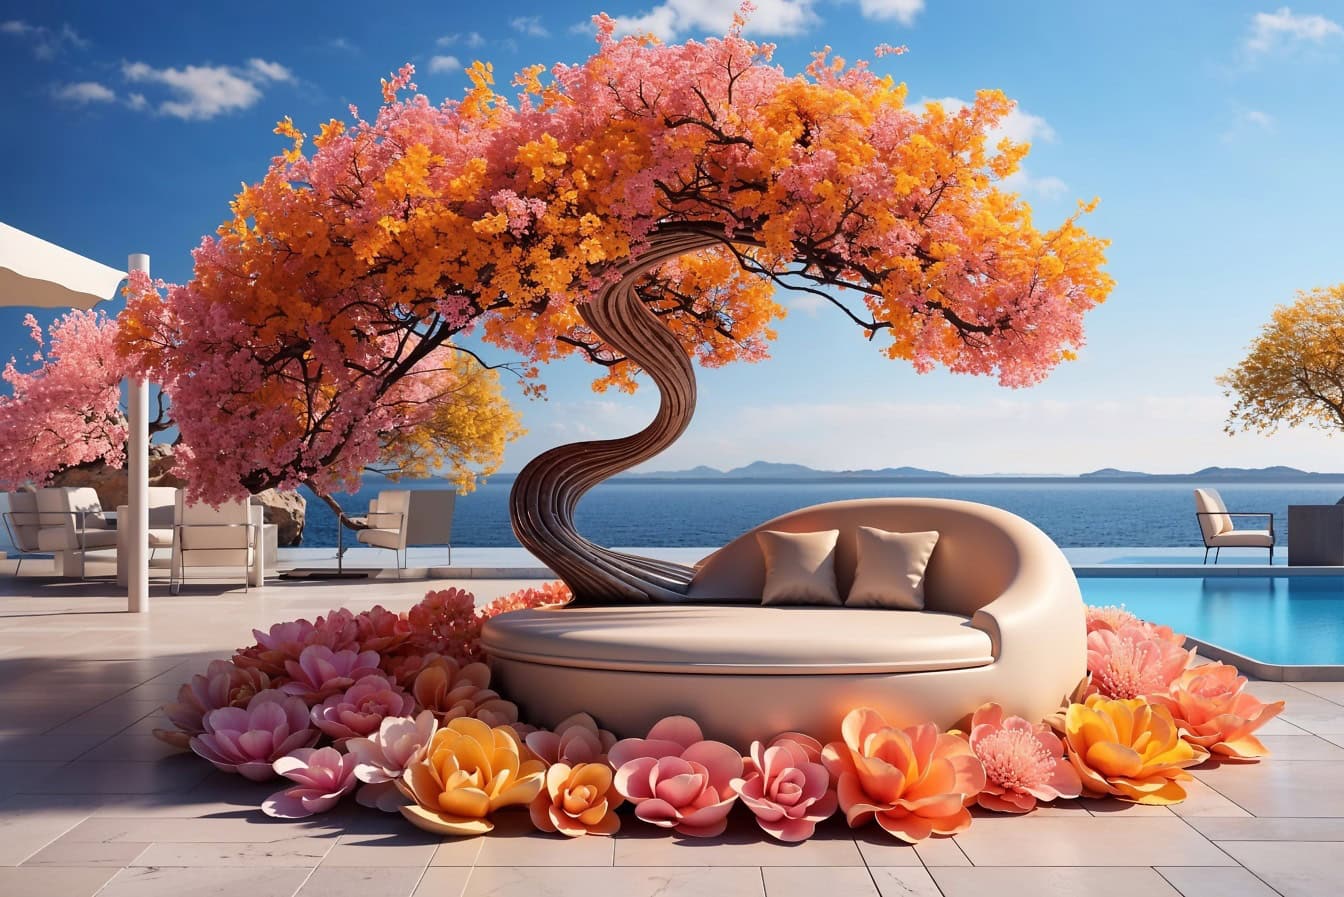 Καναπές με δέρμα παστέλ χρώματος κάτω από ένα δέντρο με πορτοκαλοκίτρινα και ροζ λουλούδια στη βεράντα της παραθαλάσσιας βίλας